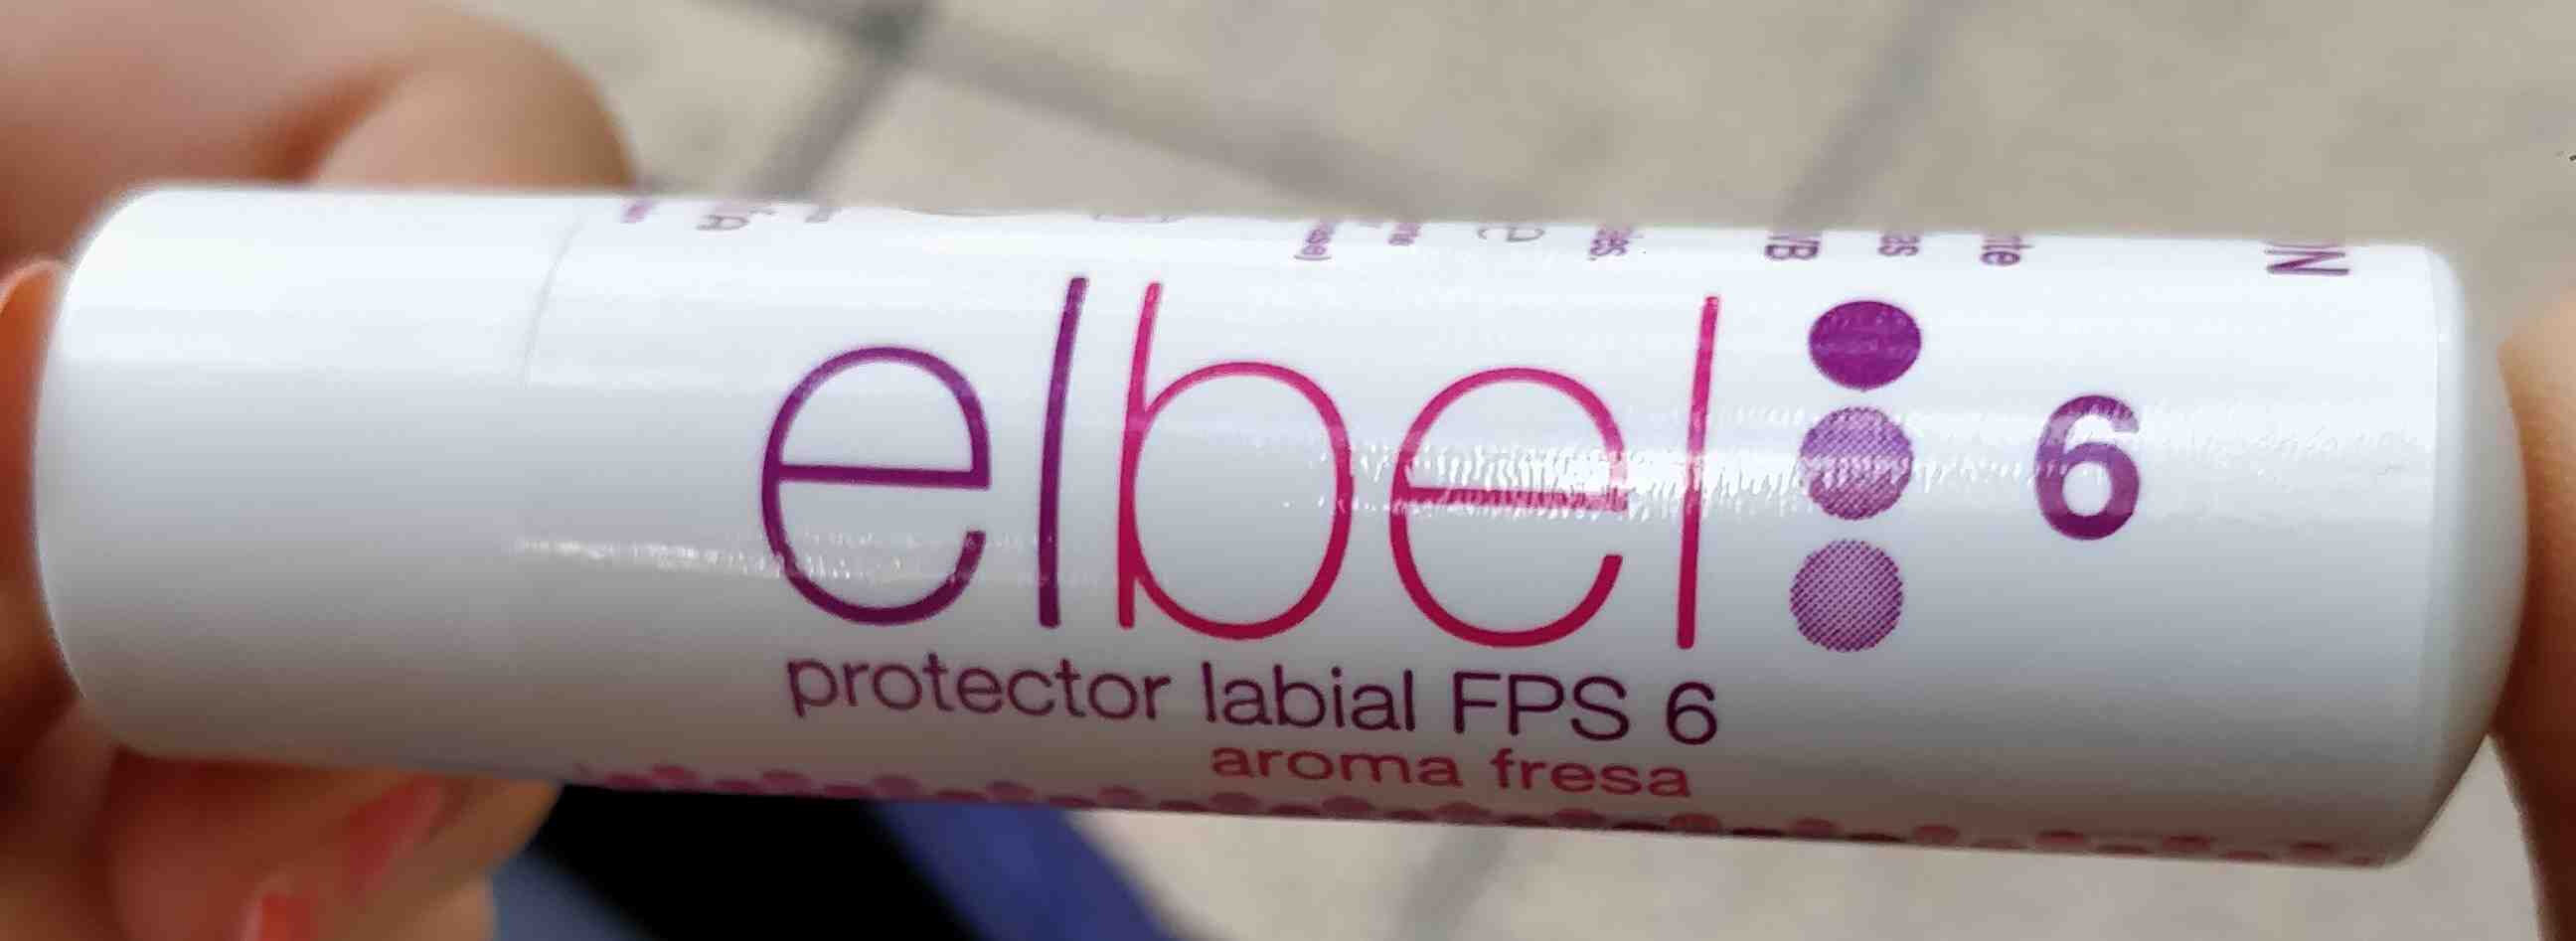 Protector labial FPS 6 aroma fresa - Tuote - en